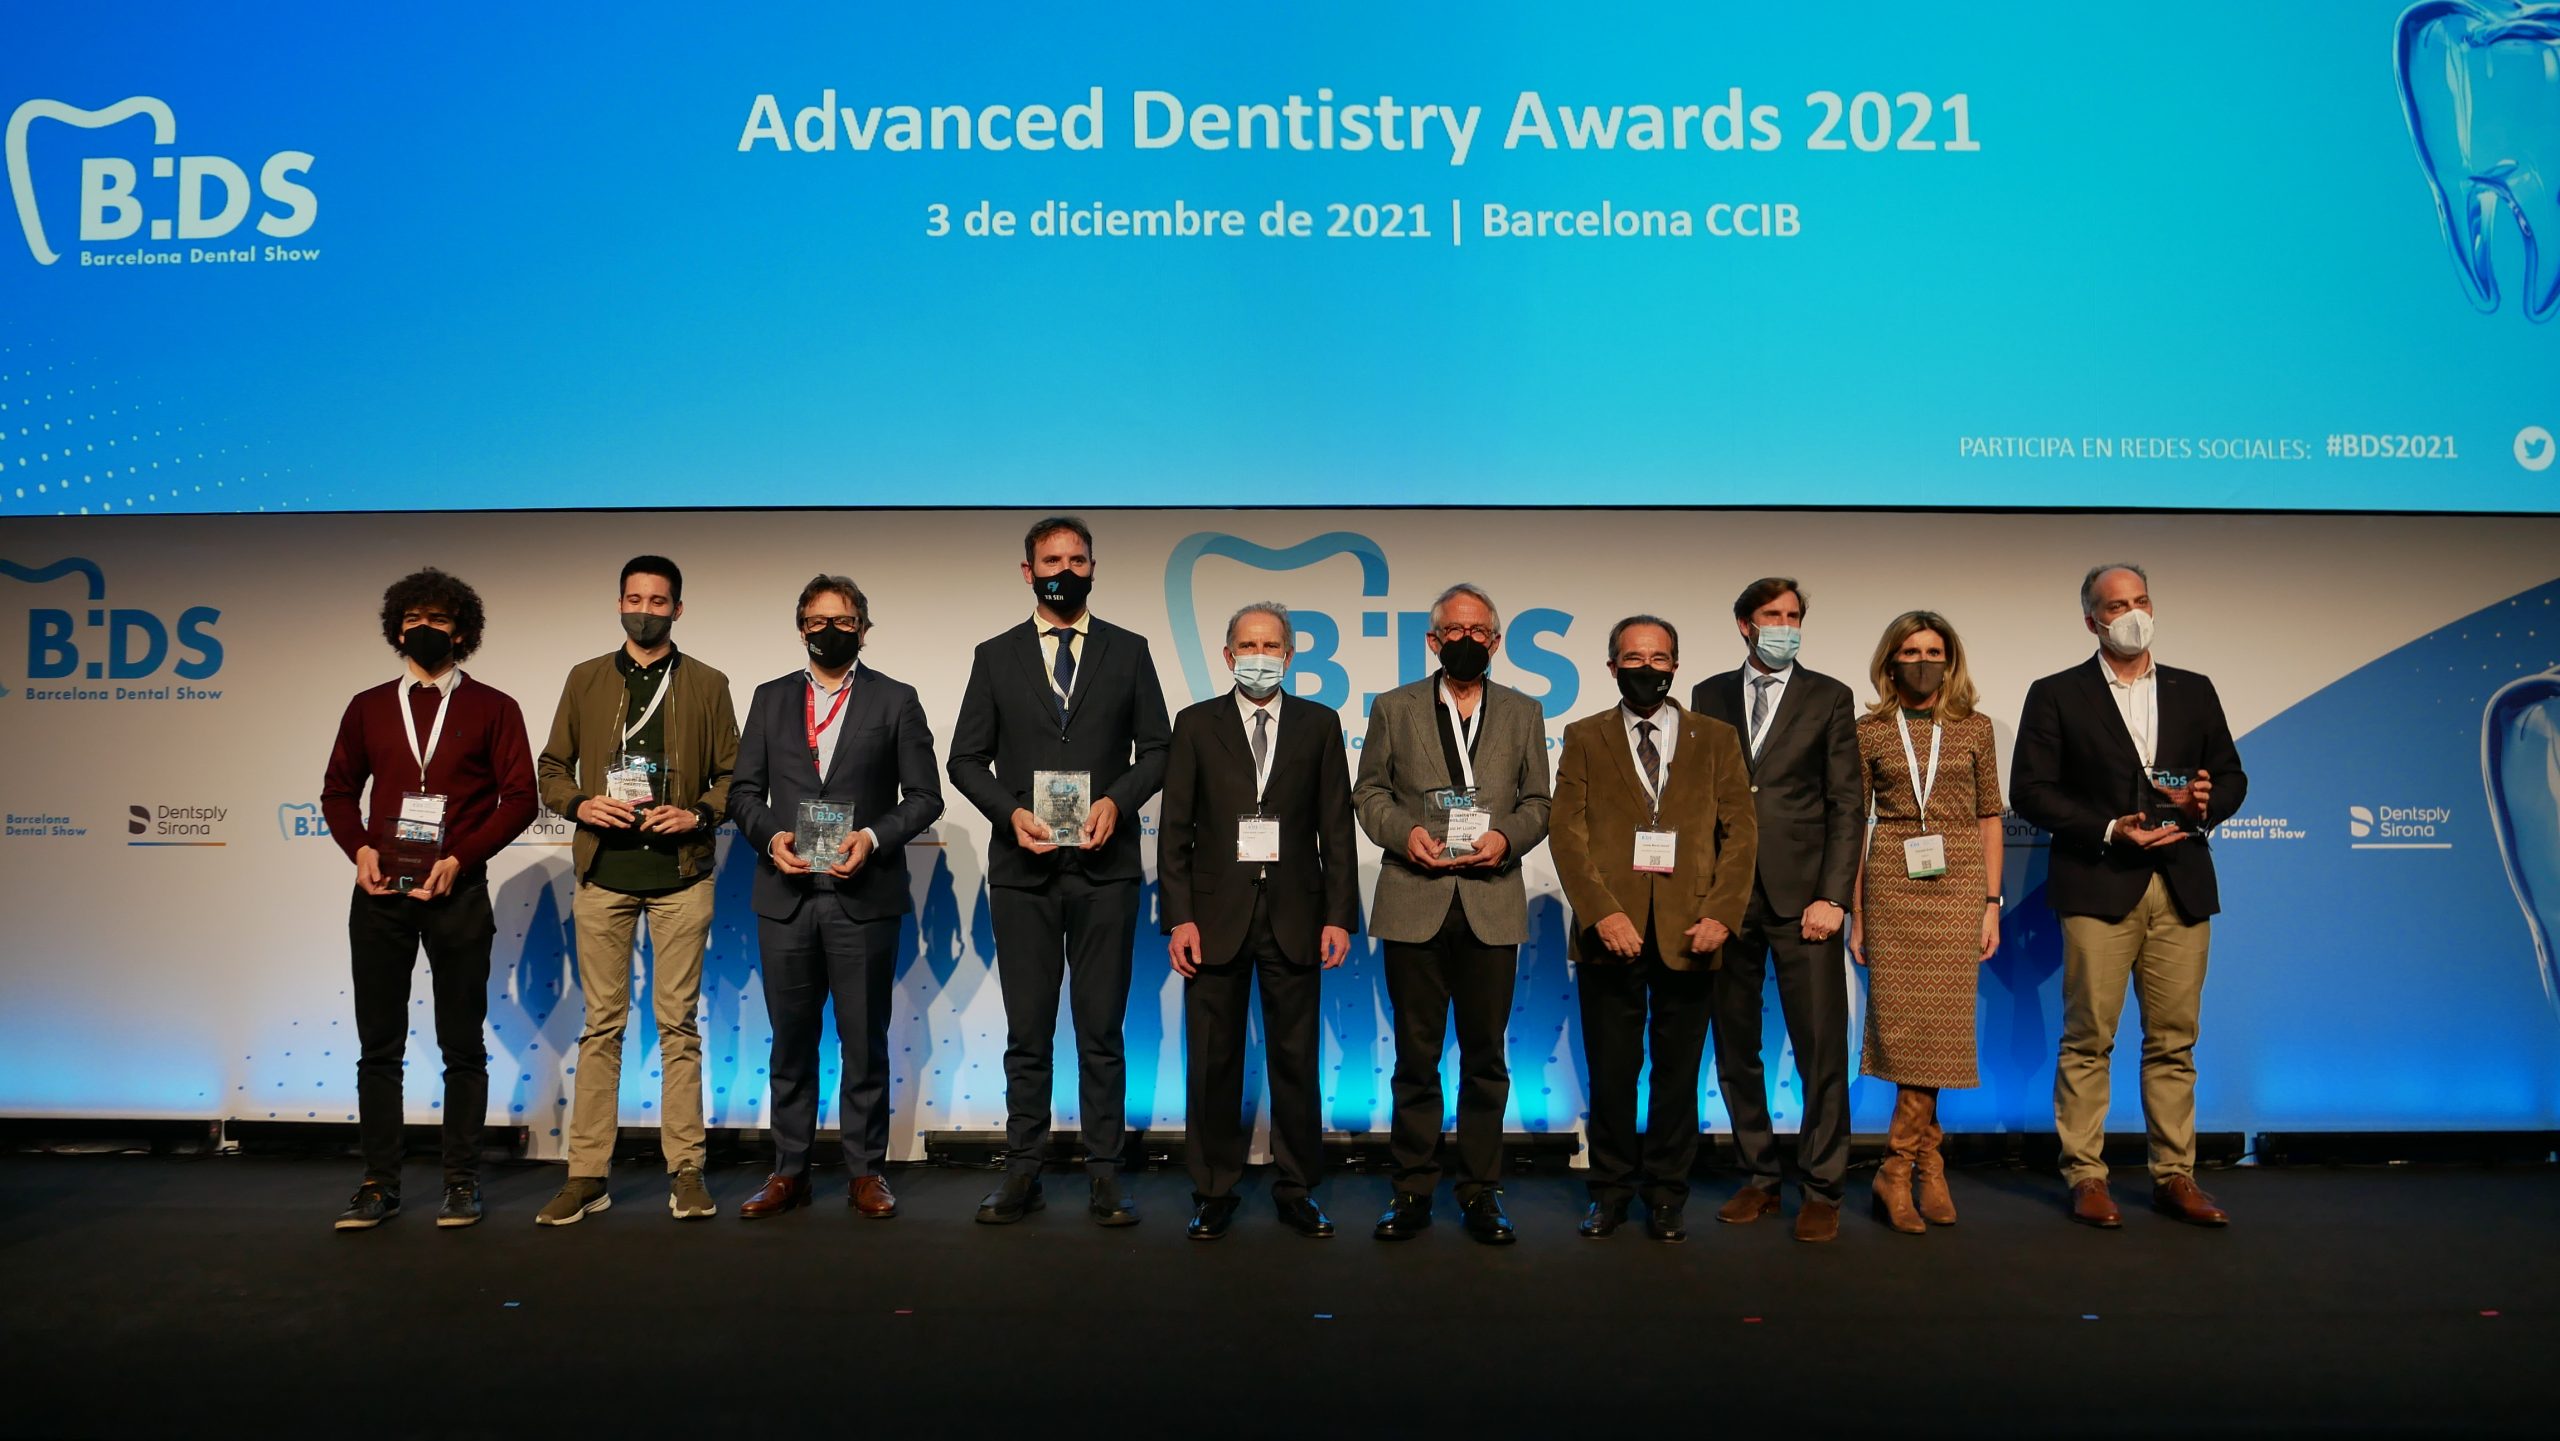 Barcelona Dental Show premiará las clínicas y laboratorios dentales más innovadores en los Advanced Dentistry Awards 2023